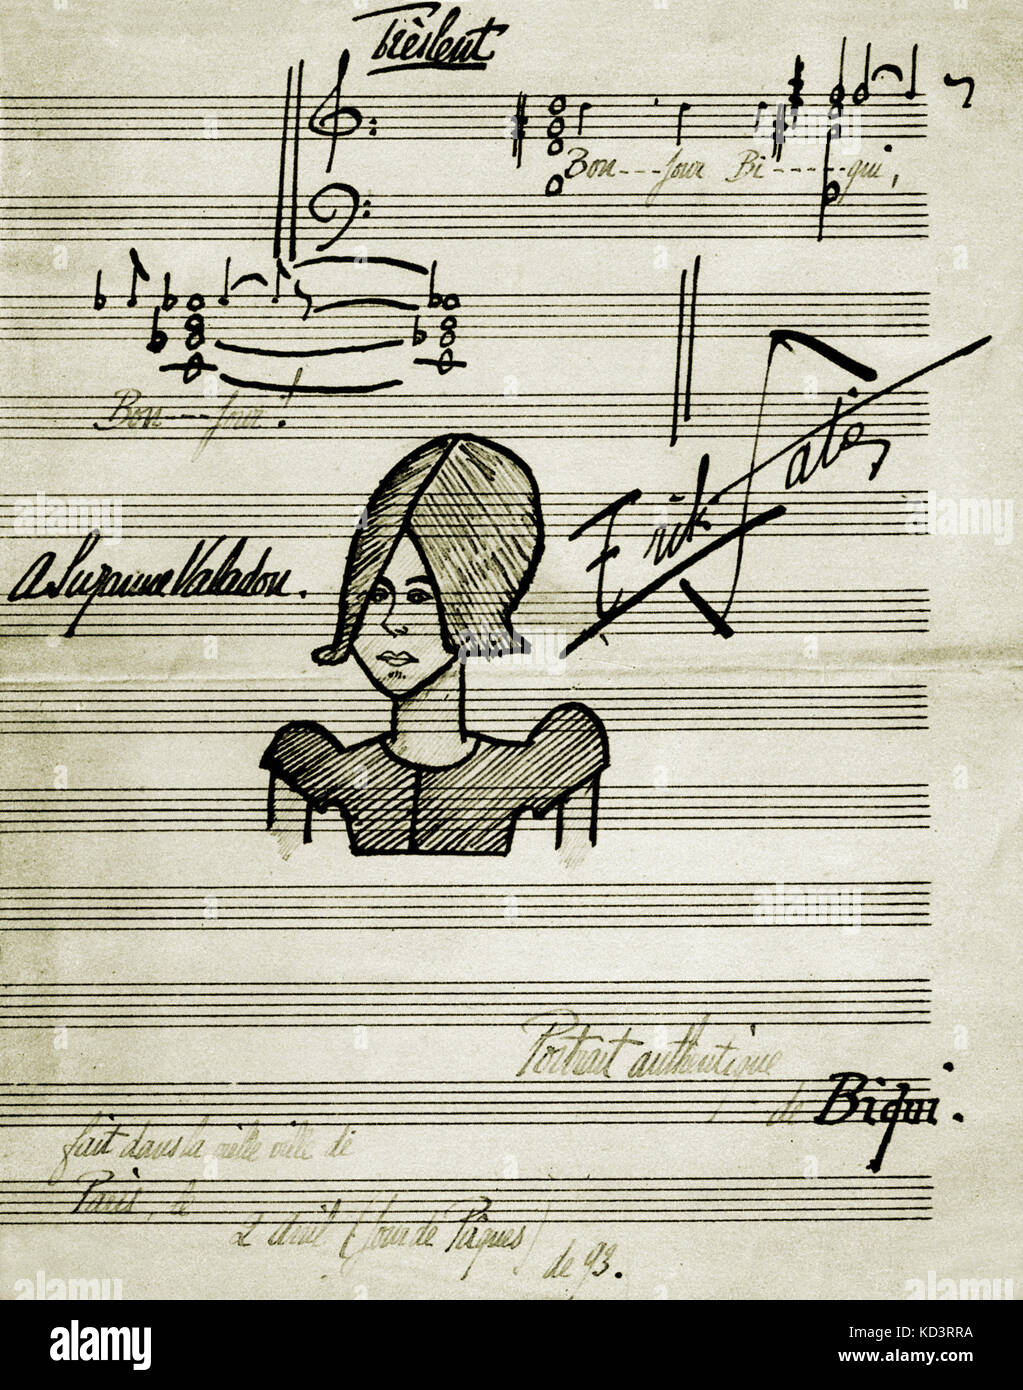 SATIE, E- ritratto di Suzanne Valadon da Satie - romantico link . Il compositore francese, 17 maggio 1866 - 1 luglio 1925. Foto Stock